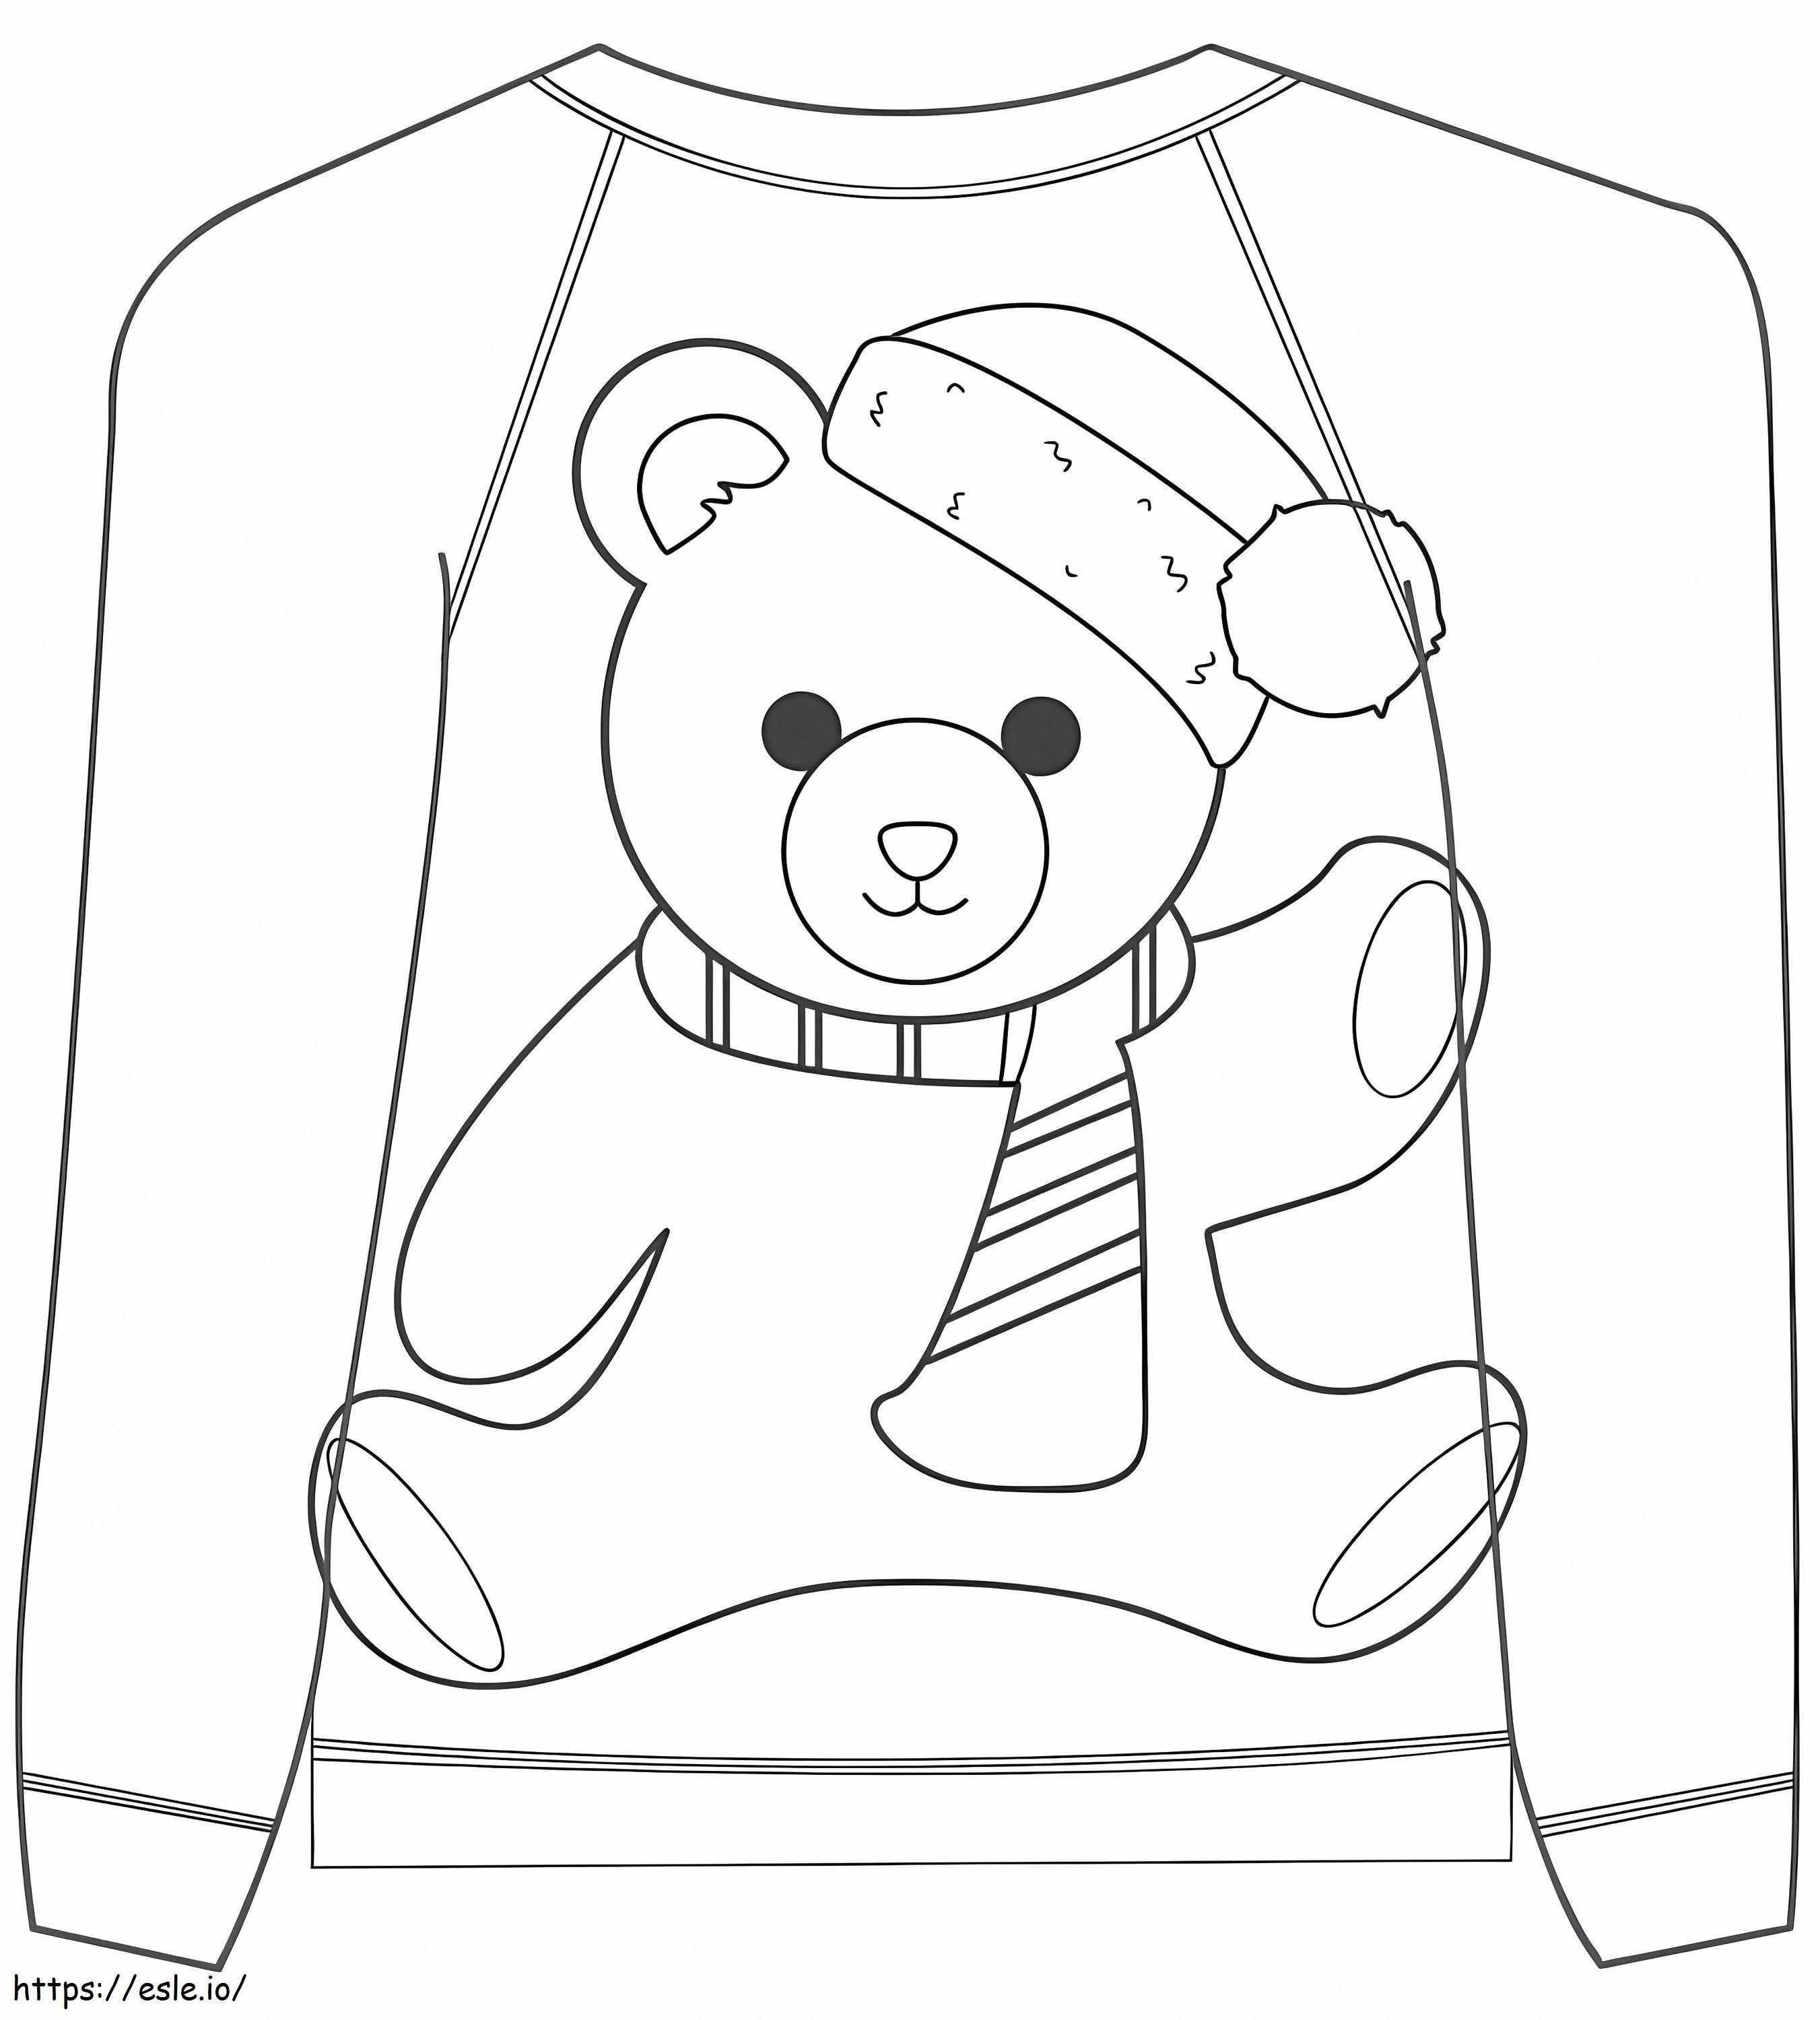 Weihnachtspullover mit Teddybär ausmalbilder